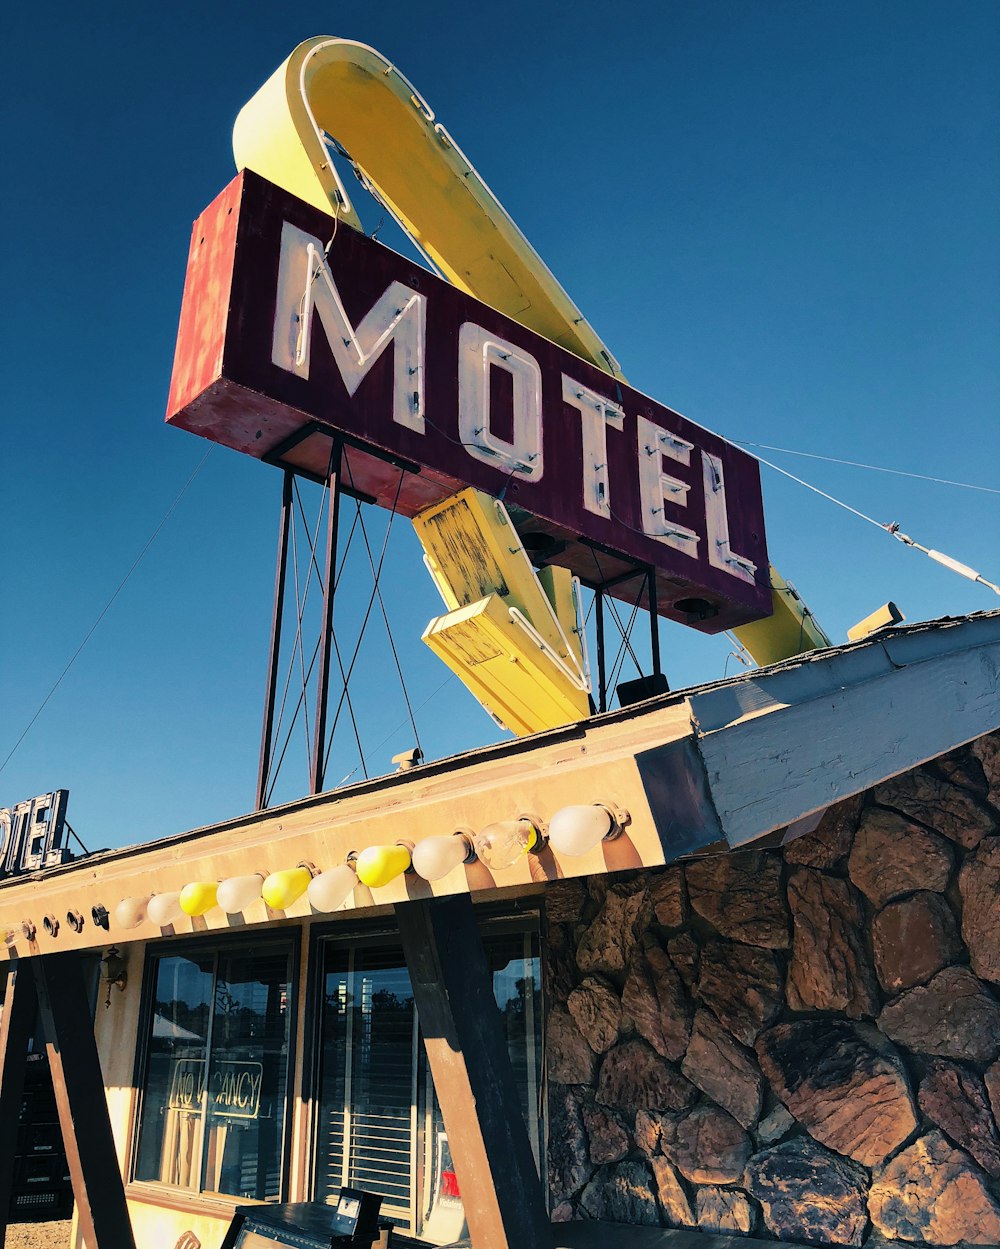 Un motel con un gran letrero de neón en la parte superior